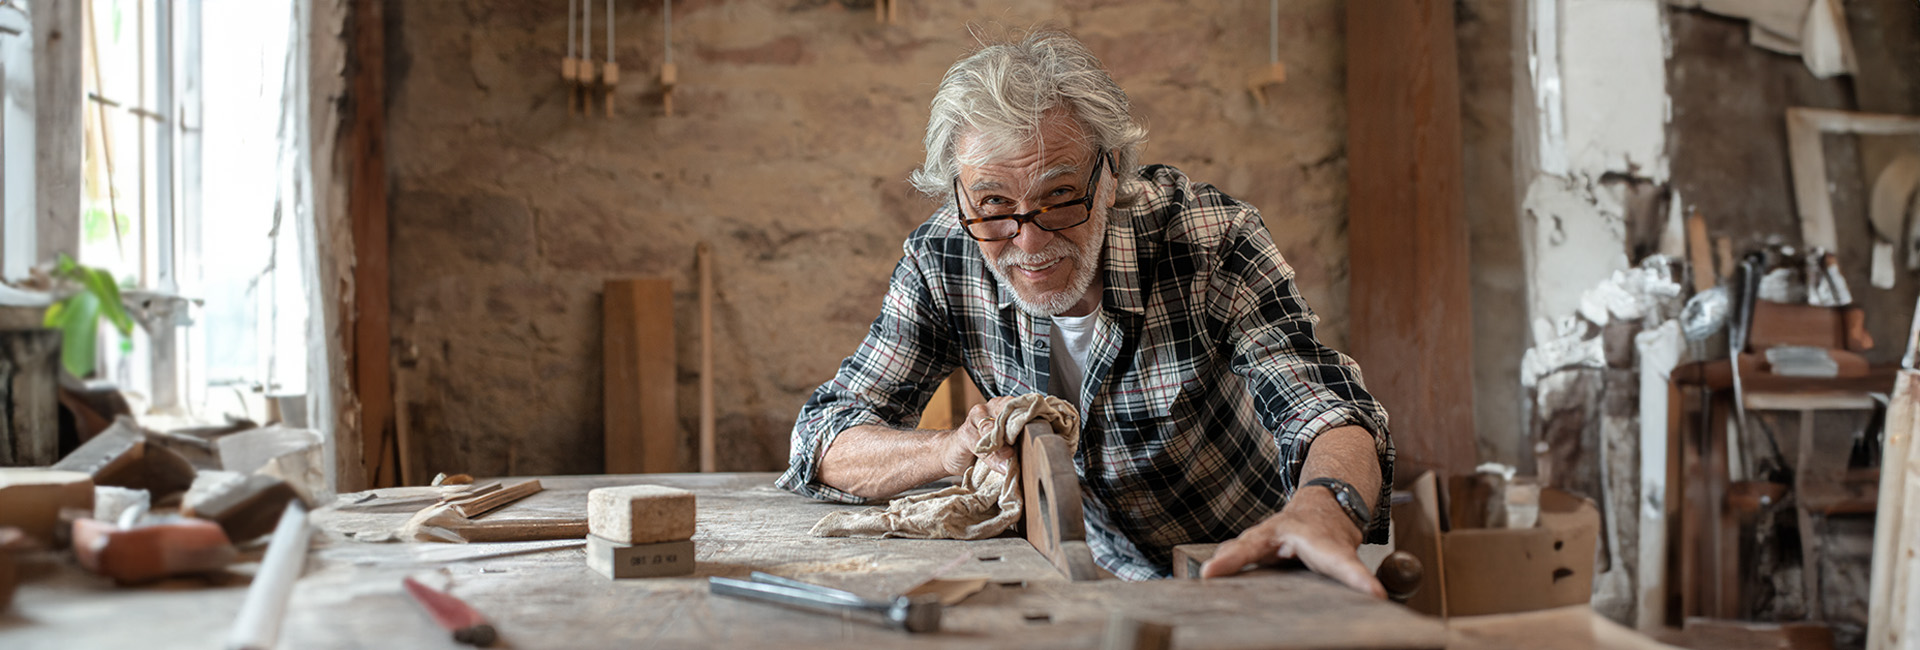 Älterer Mann in Pension arbeitet in Werkstatt an Hobelbank